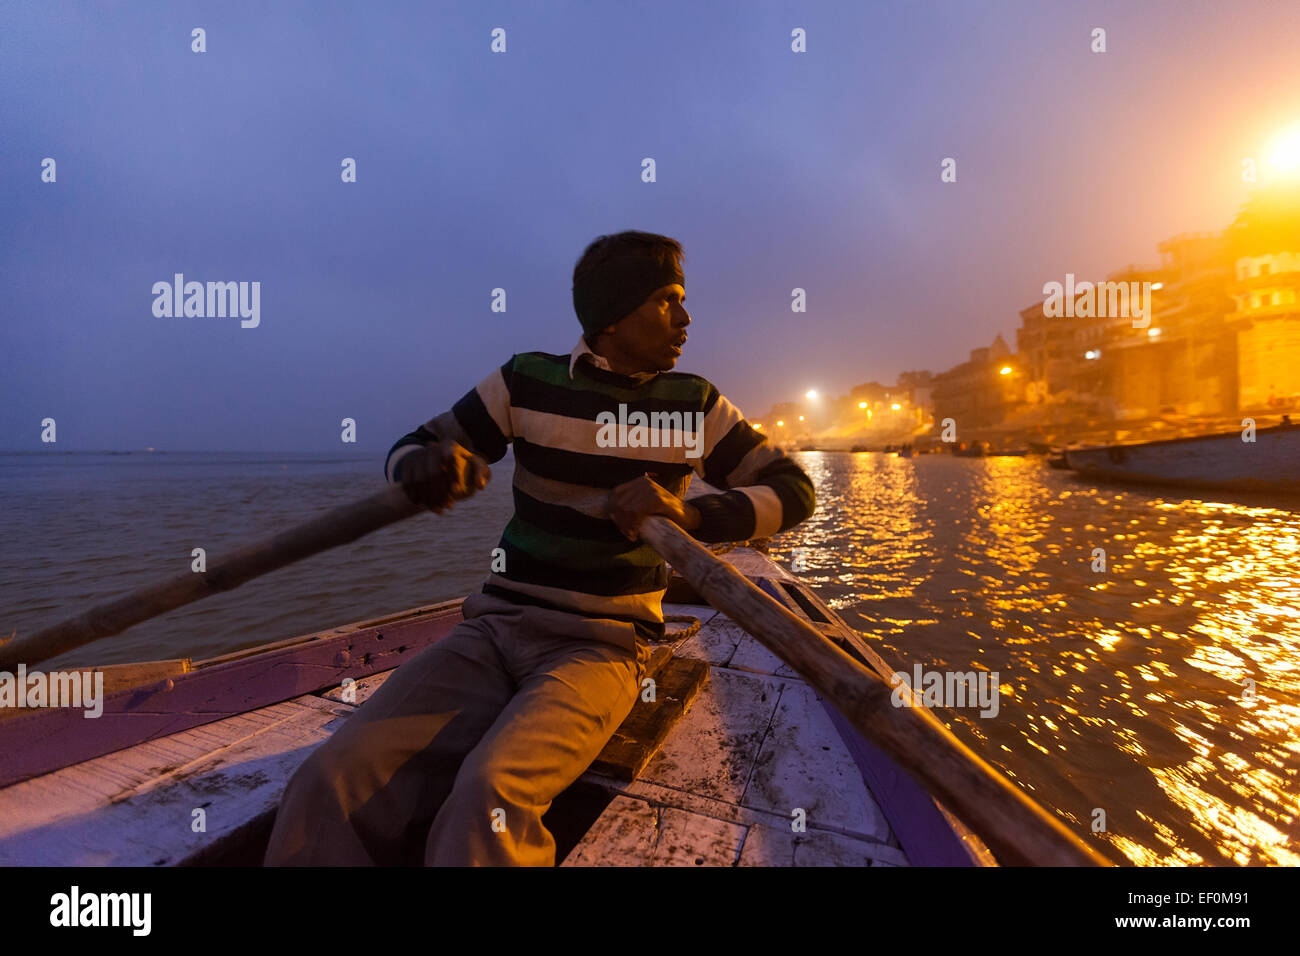 VARANASI, INDE - 05 janvier, 2015 : un homme l'aviron en bois d'un bateau de tourisme sur le Gange juste avant le lever du soleil. Banque D'Images